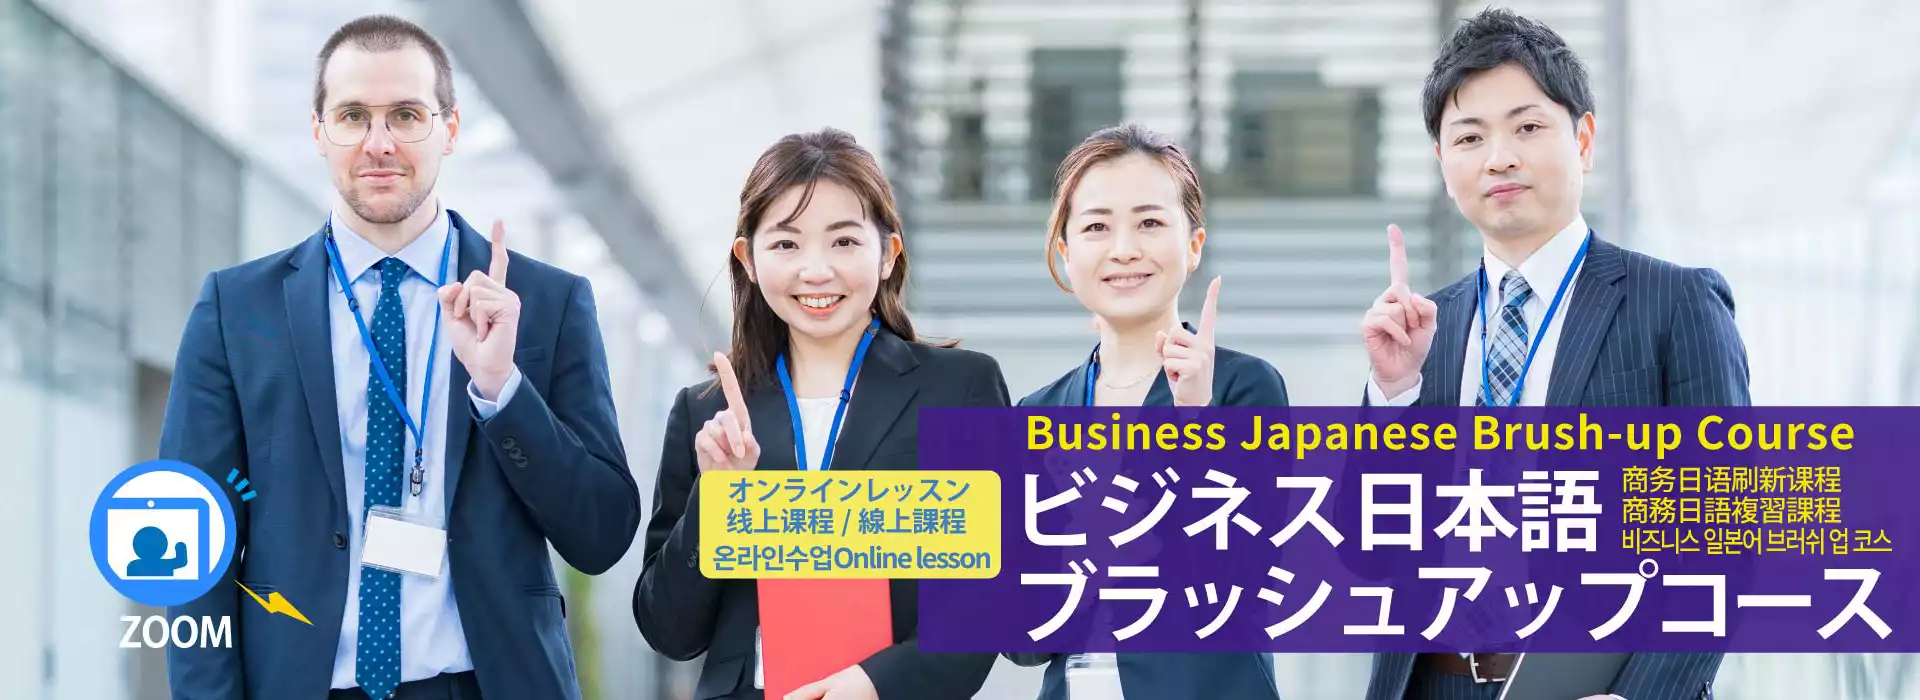 在线商务日语强化课程 